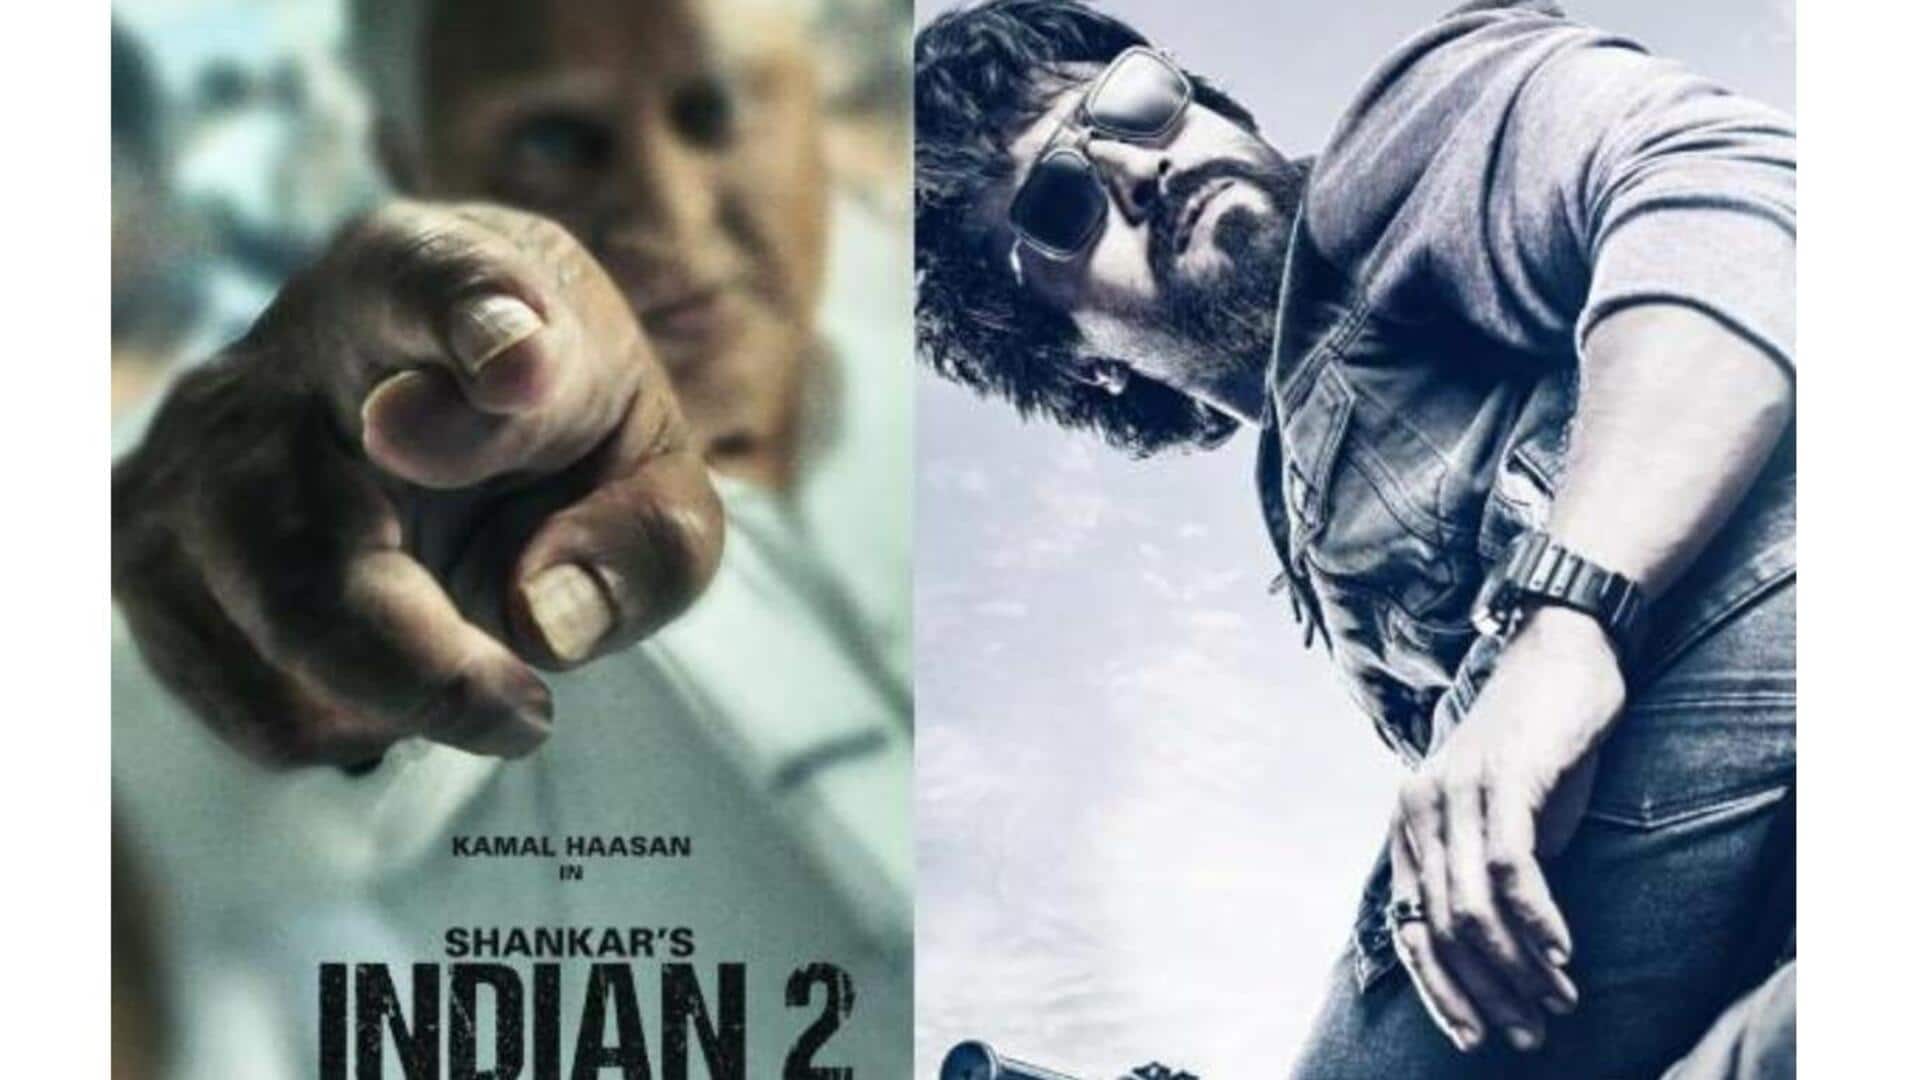 Cinema Release: గేమ్ చేంజర్, ఇండియన్ 2 విడుదల సస్పెన్స్​ కు తెరదించిన శంకర్